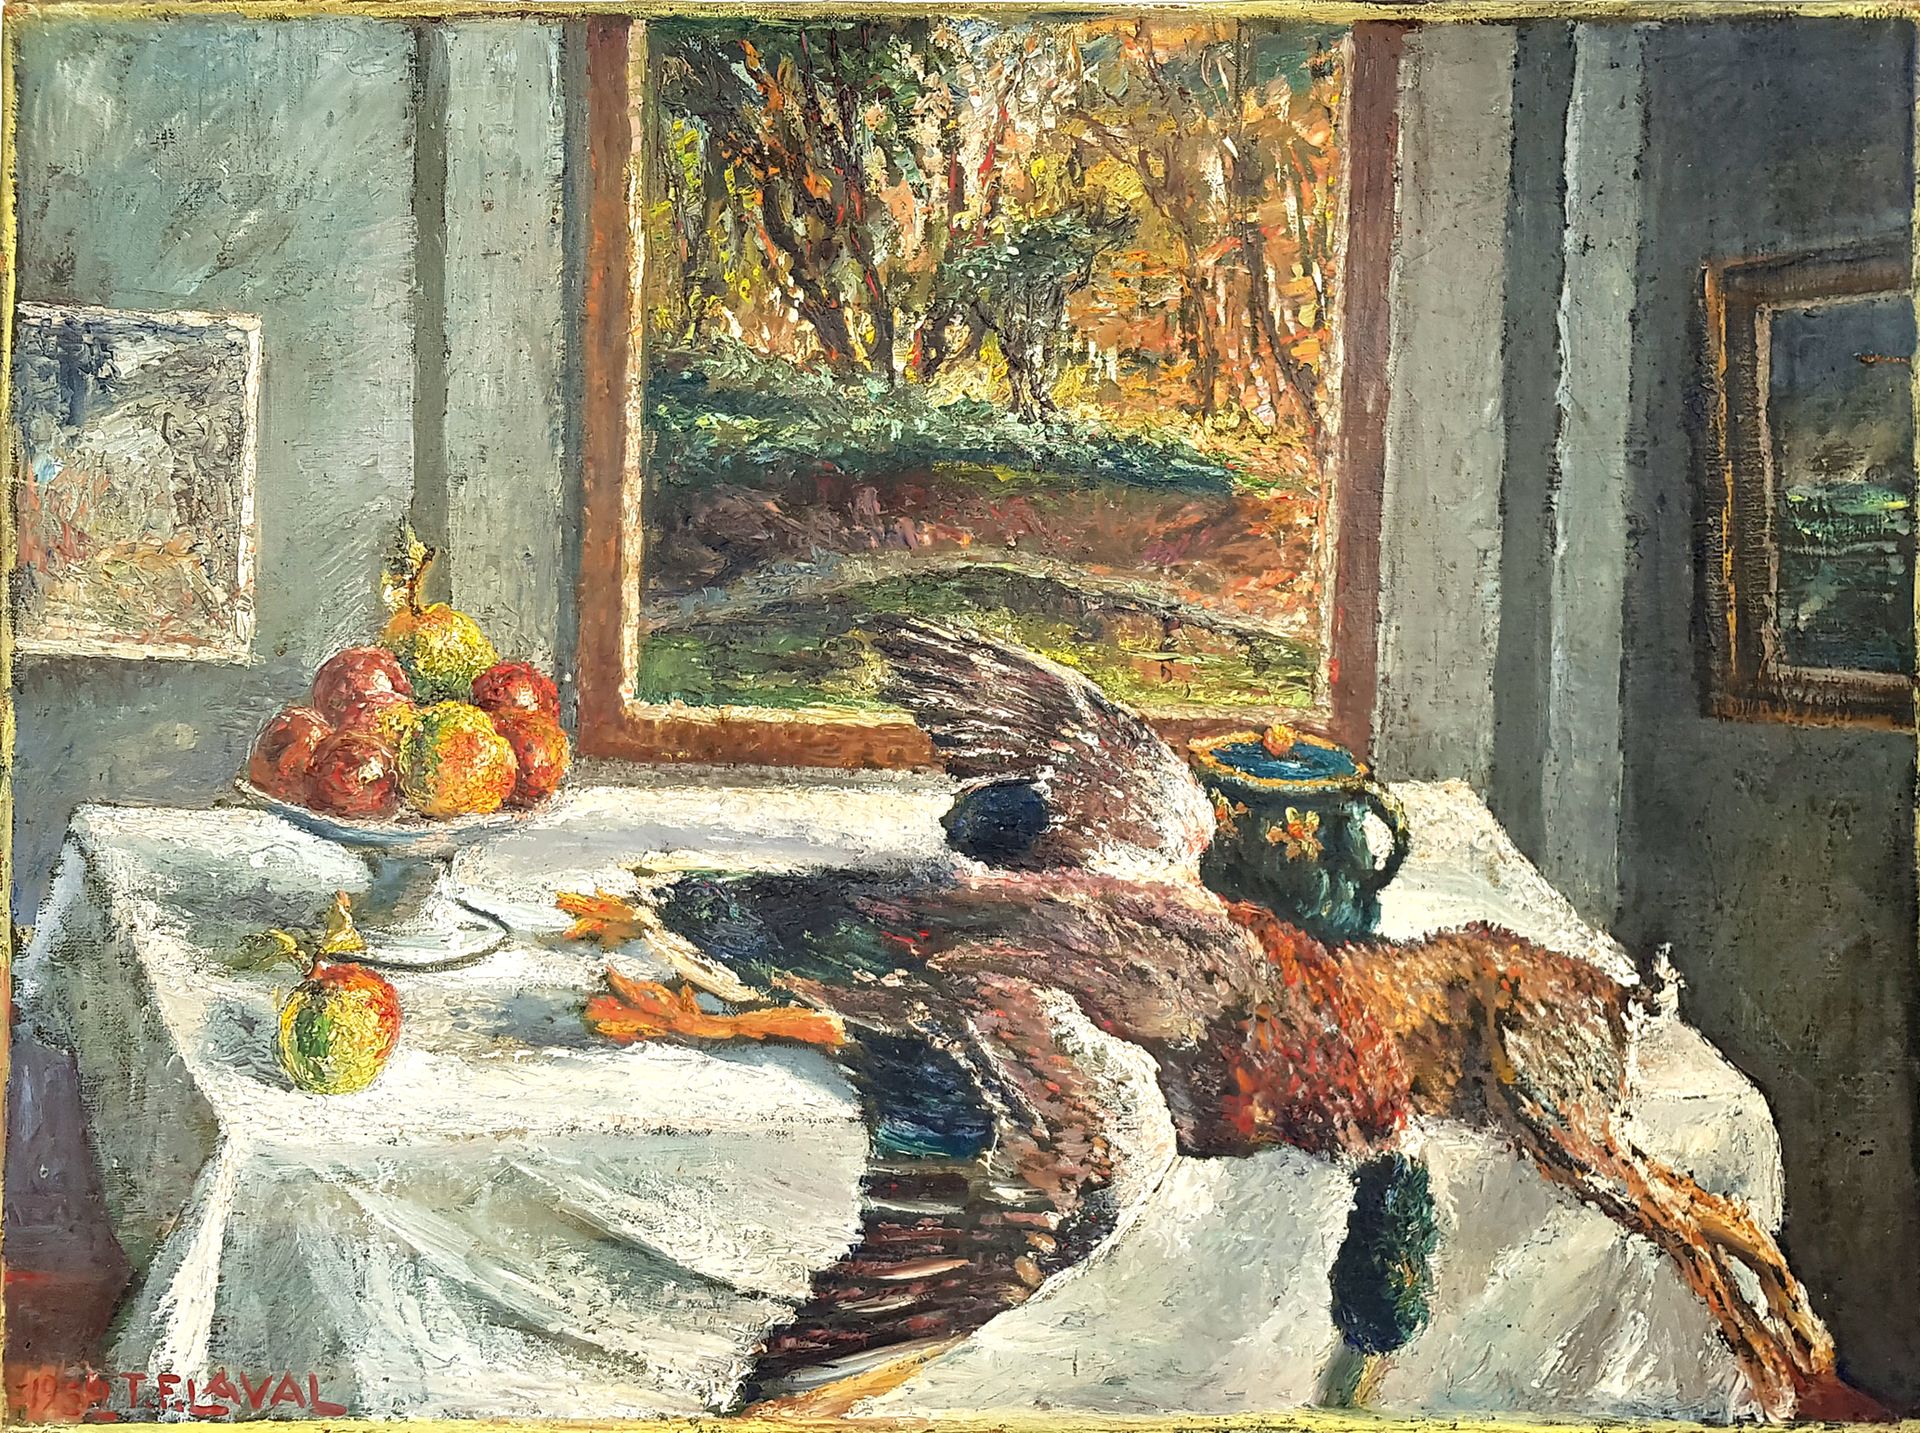 Null 费尔南-拉瓦尔 (1886-1966)

静物与小游戏，1952年

布面油画，有T.F. LAVAL的签名和日期

60 x 80,5 cm